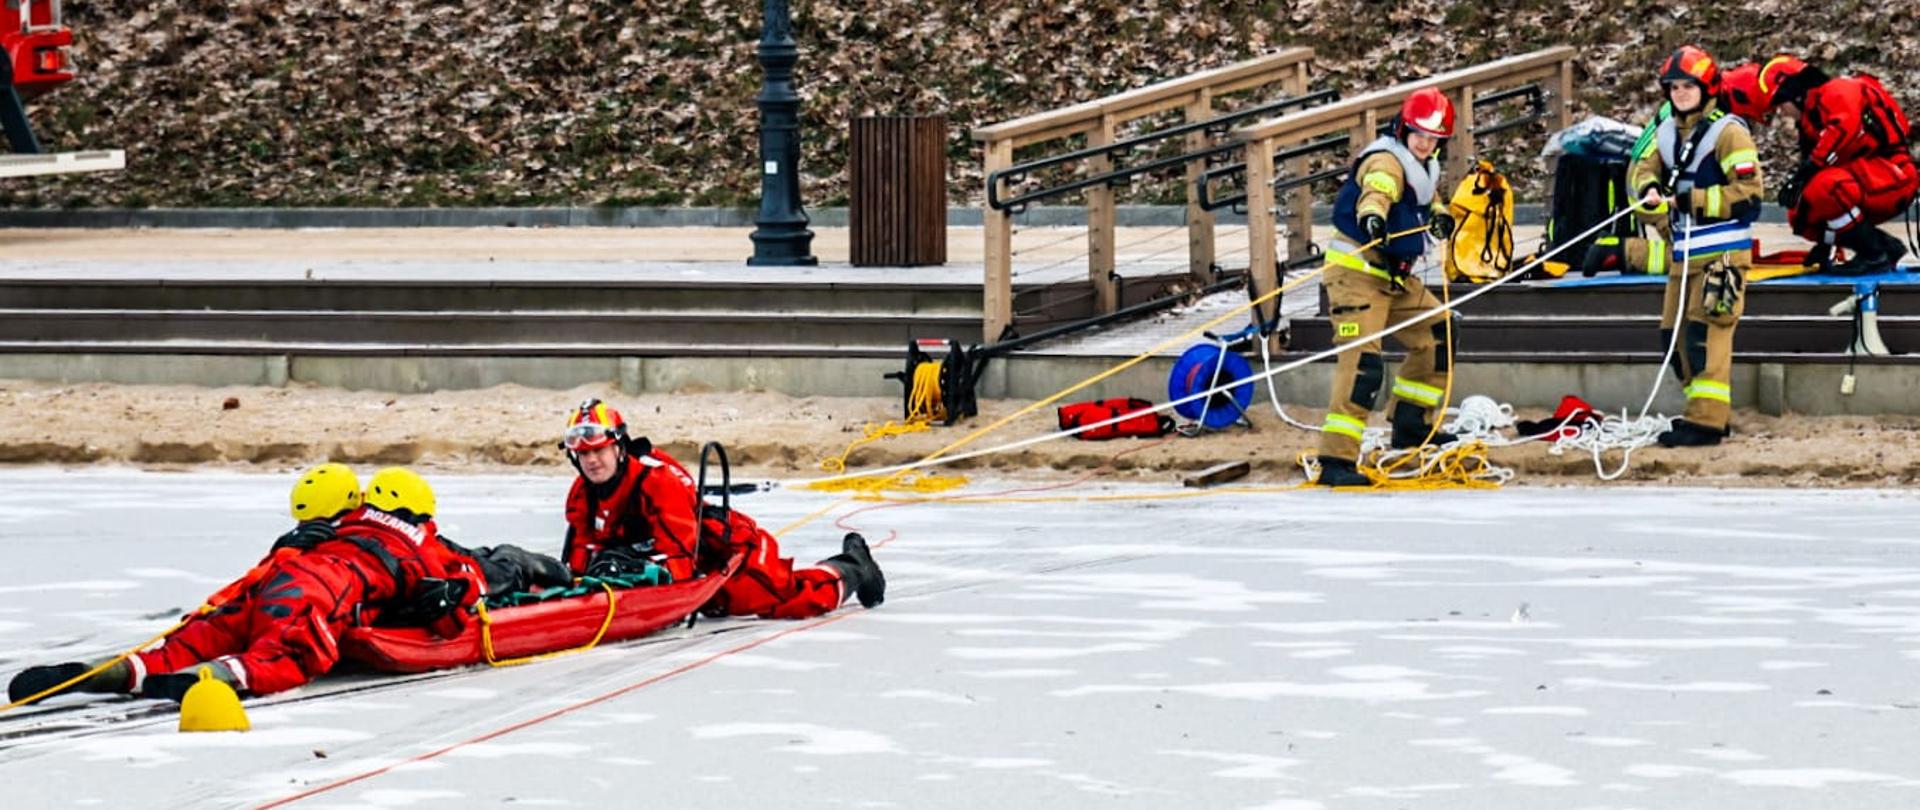 Strażacy wciągają ćwiczących strażaków po lodzie na saniach lodowych.